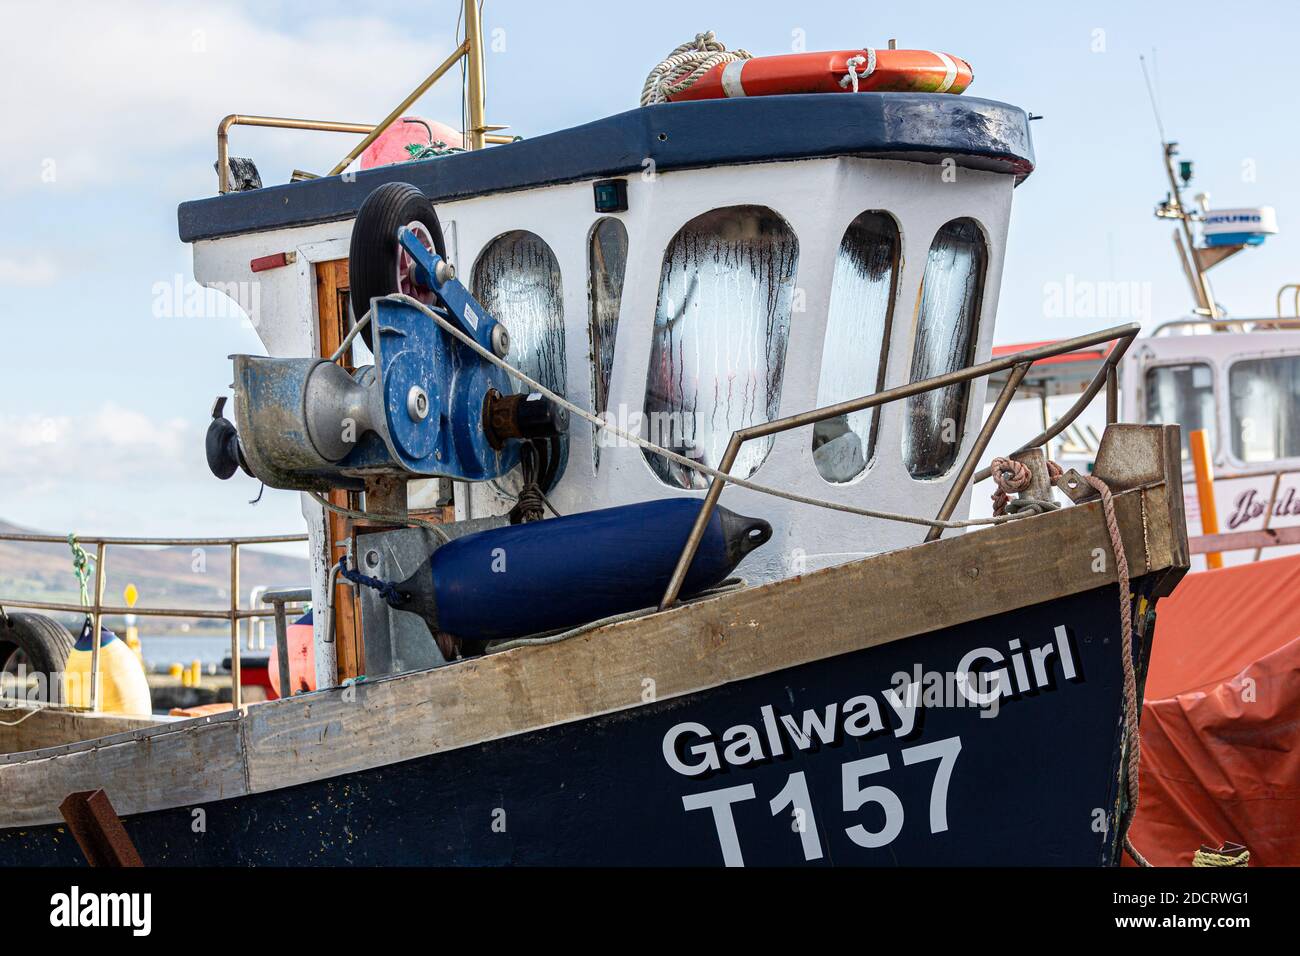 Kleines Fischerboot, Galway Girl, in Knightstown, Valentia, County Kerry, Irland Stockfoto